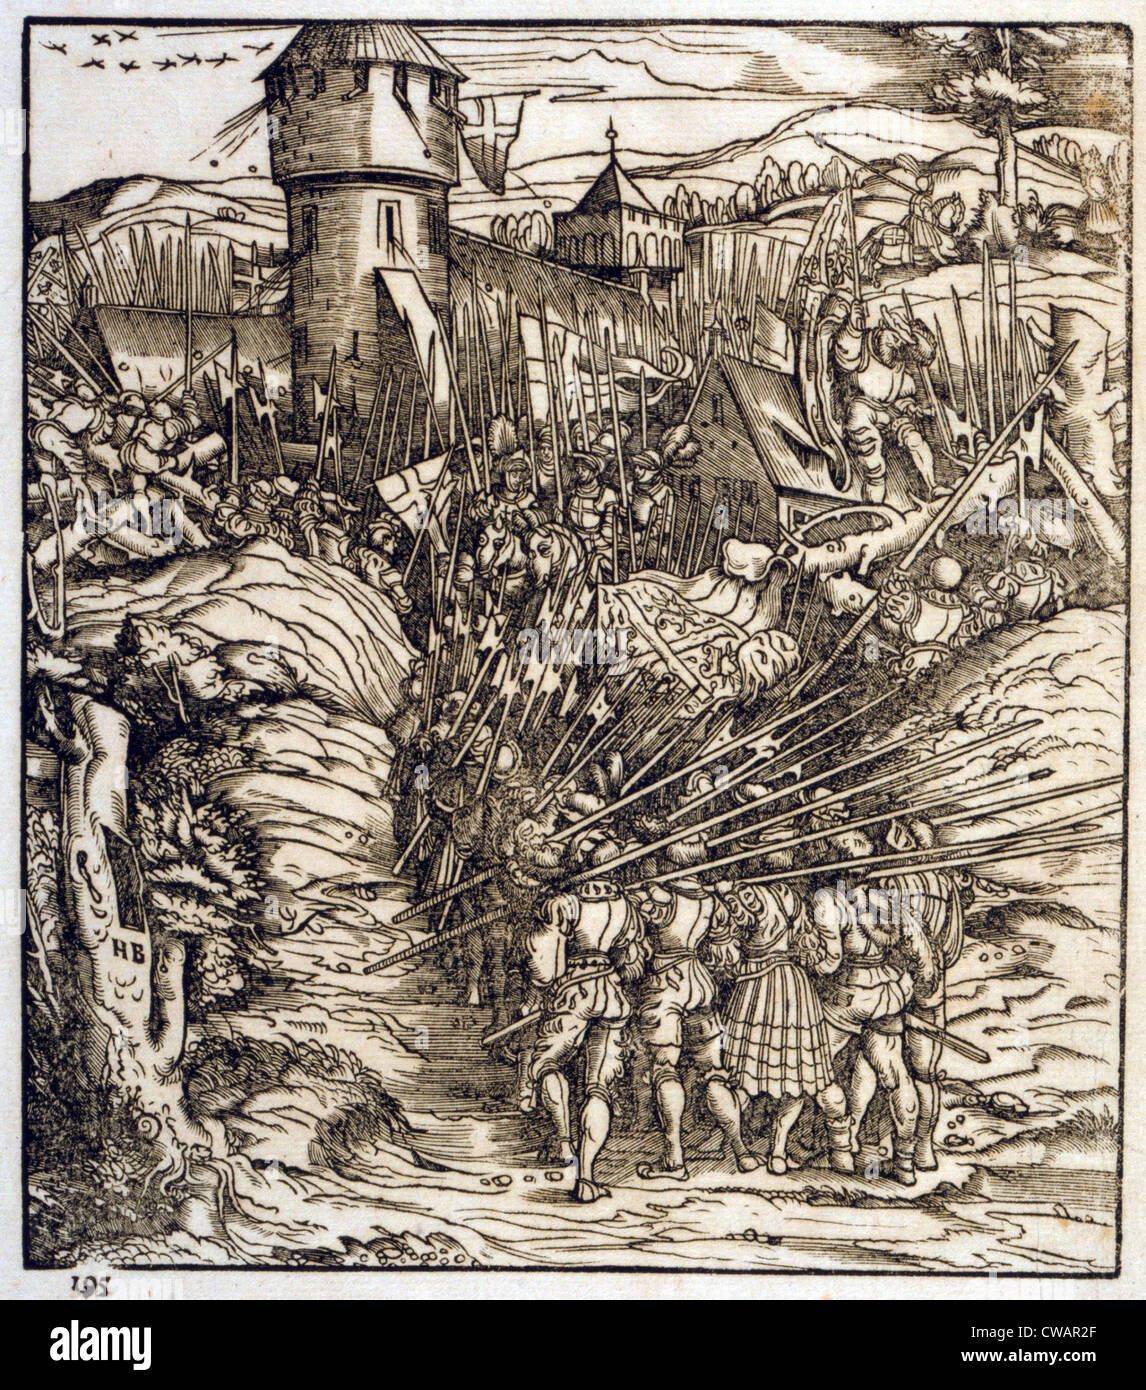 Schlacht des frühen 16. Jahrhunderts zeigt Truppen auf eine Festung.  Es zeigt möglicherweise einen Überraschungsangriff auf Maastricht Stockfoto